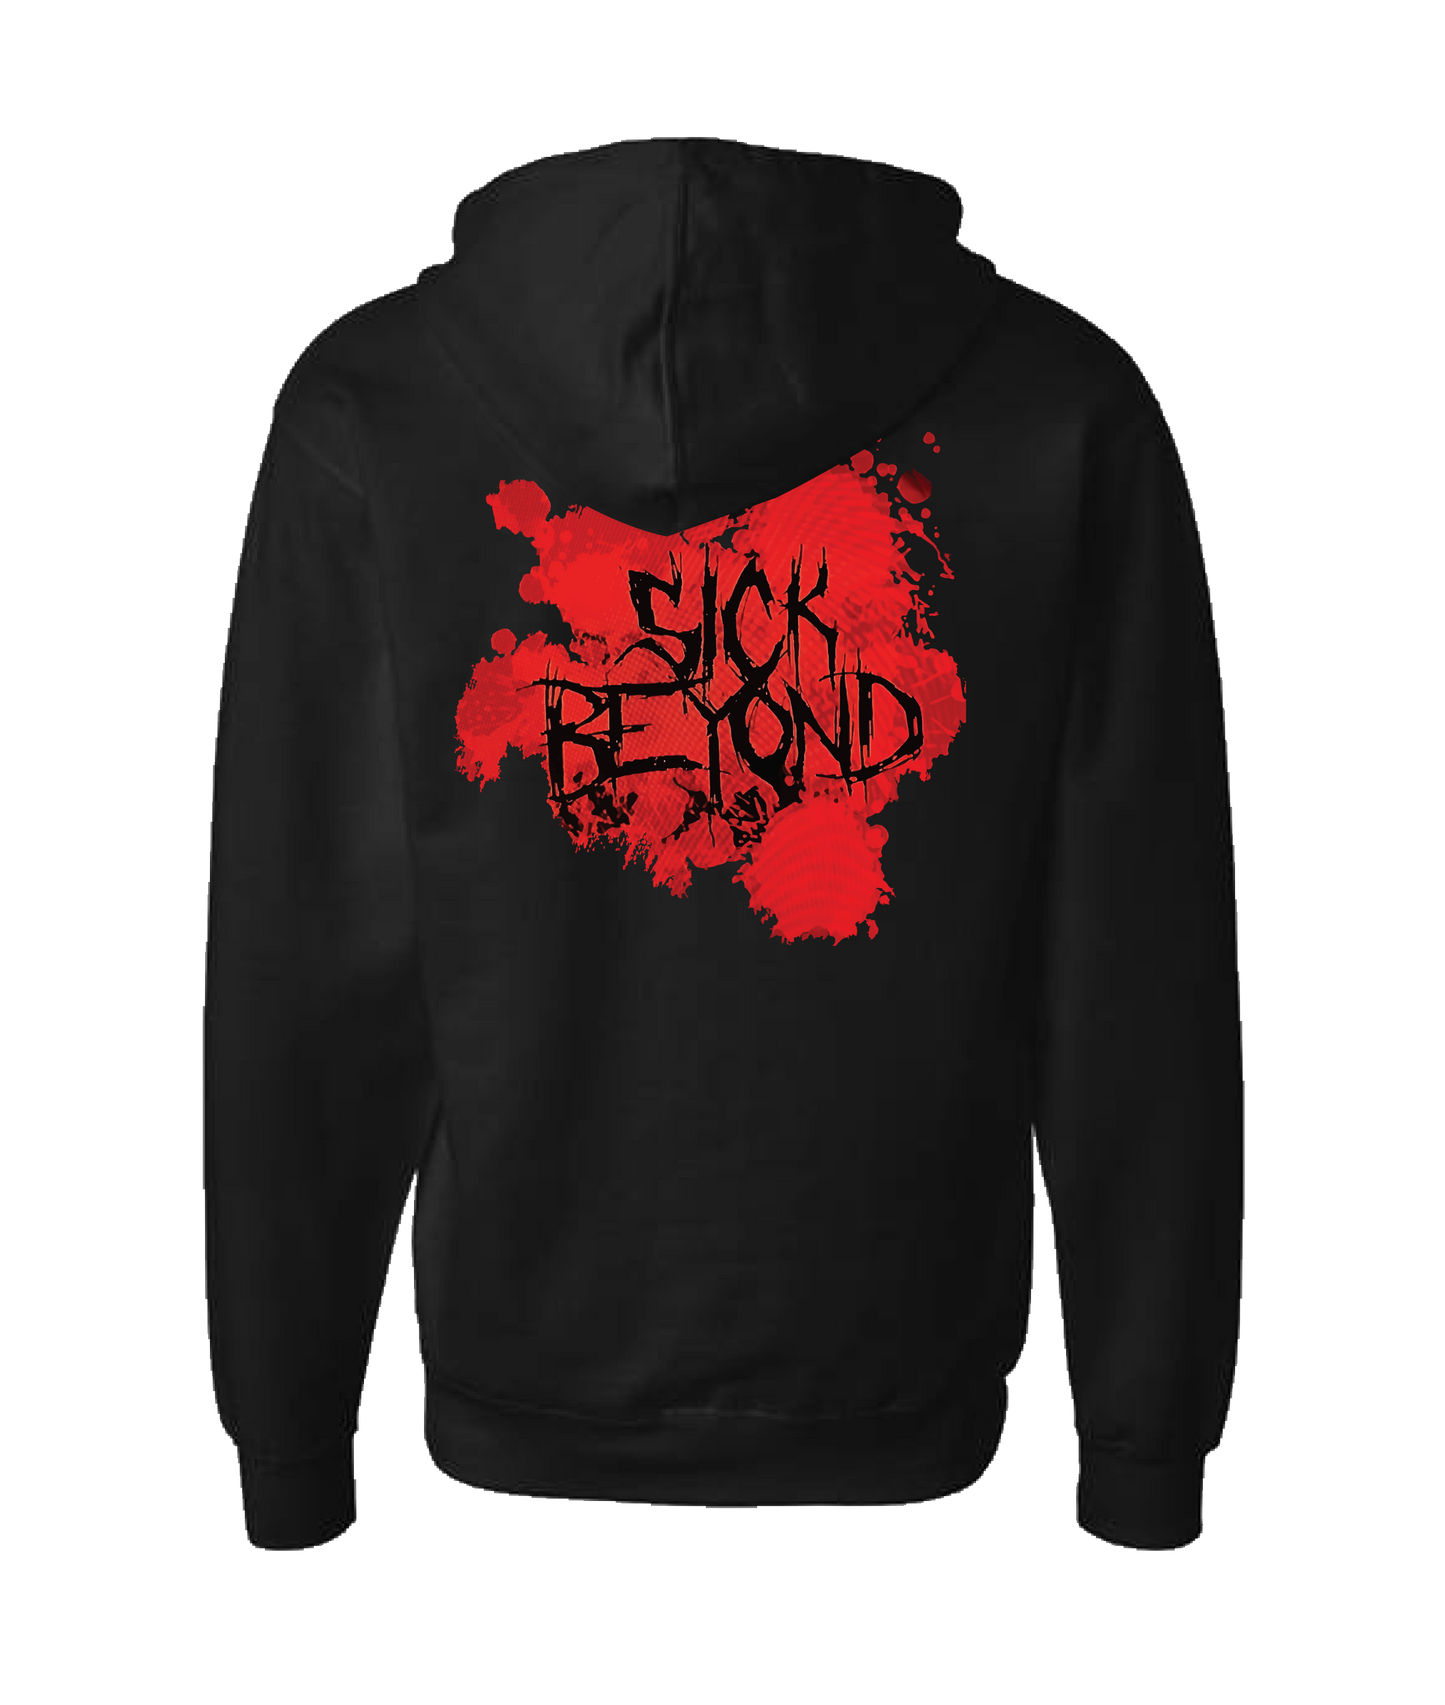 Sick Beyond - Blood - Black Zip Up Hoodie